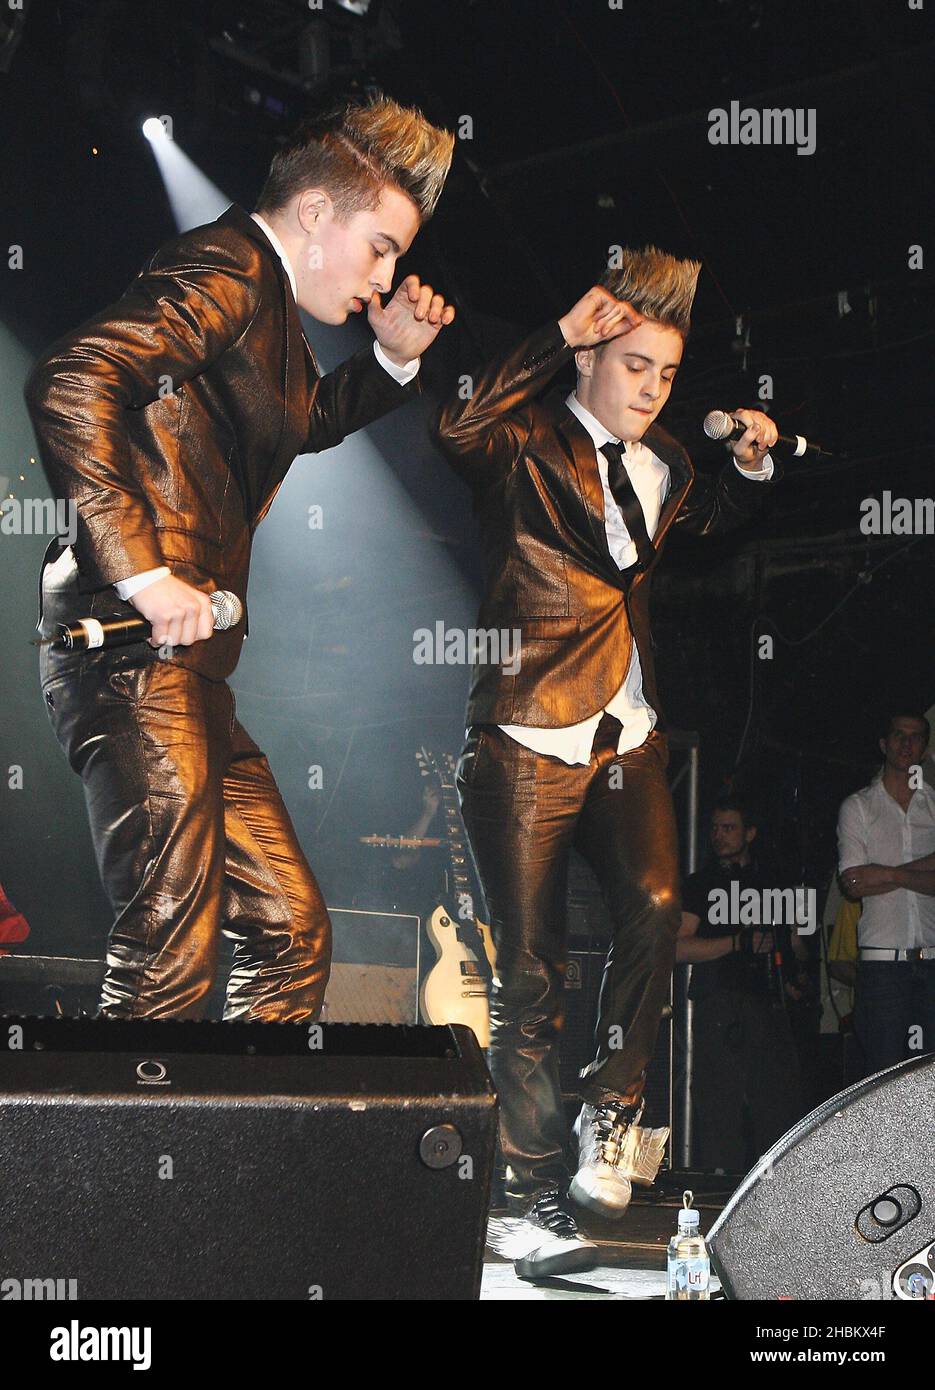 John und Edward Grimes von Jedward, die von X Factor gewählt wurden, treten bei GAY, London, auf. Stockfoto